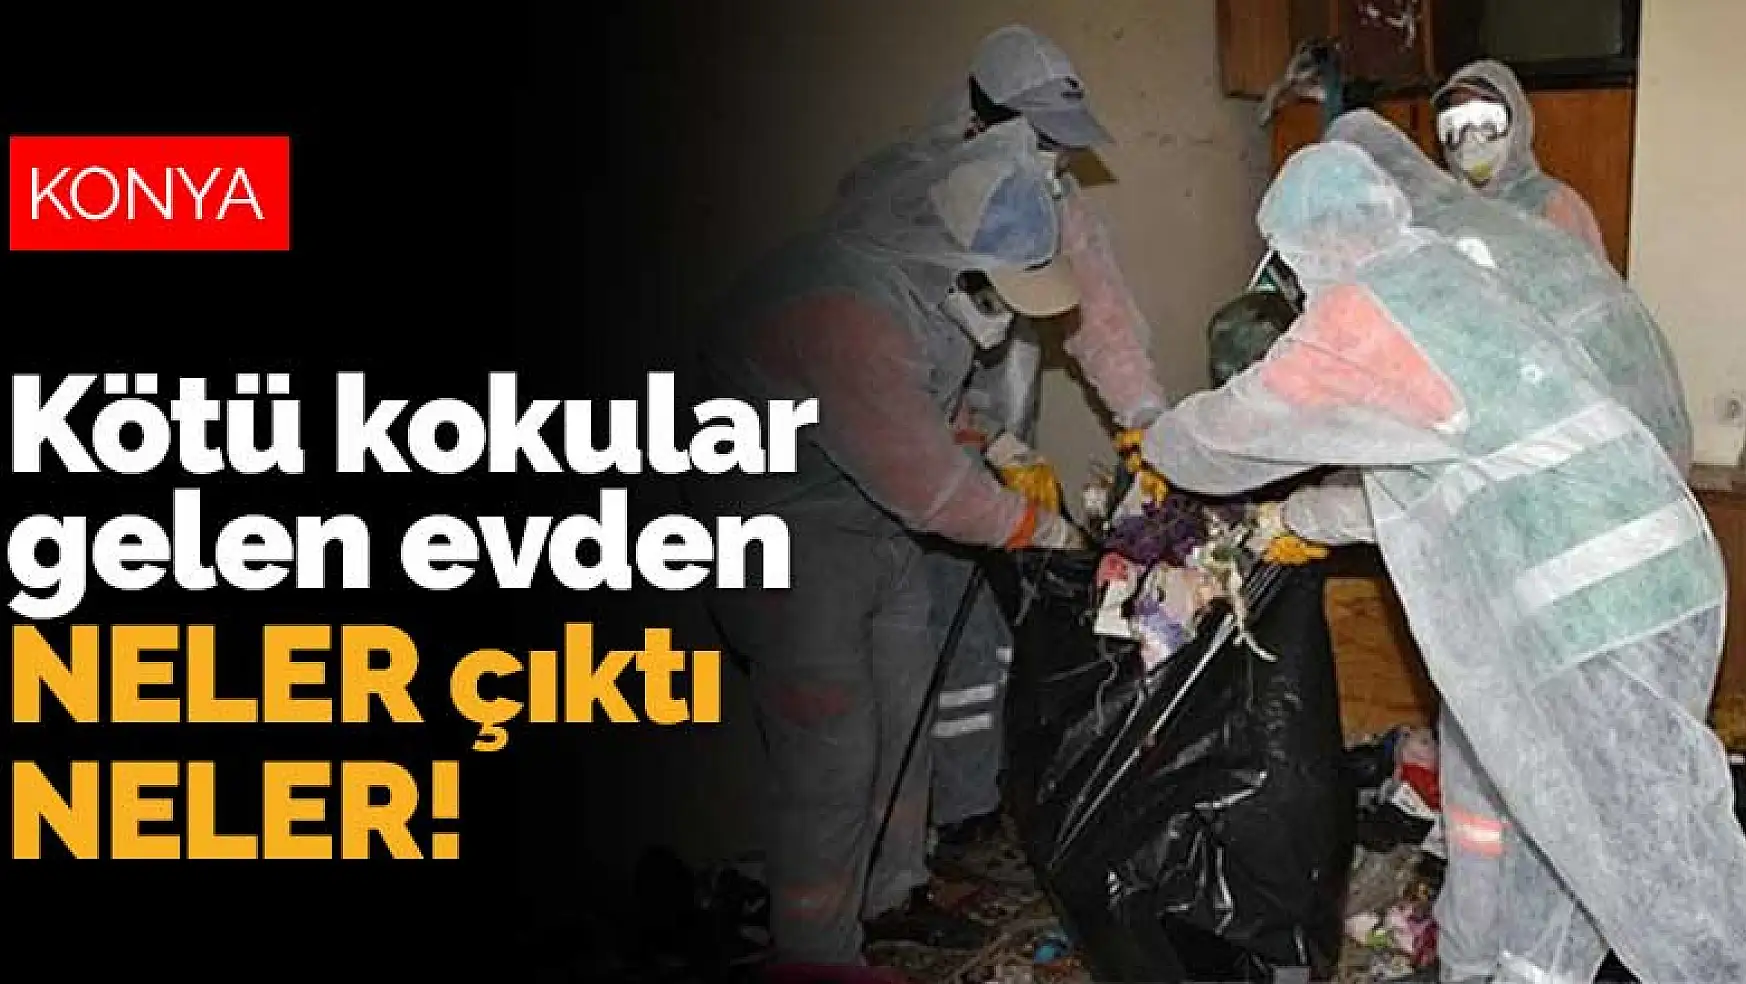 Konya'da kötü kokular gelen evden neler çıktı neler! 4 kamyon anca taşıdı